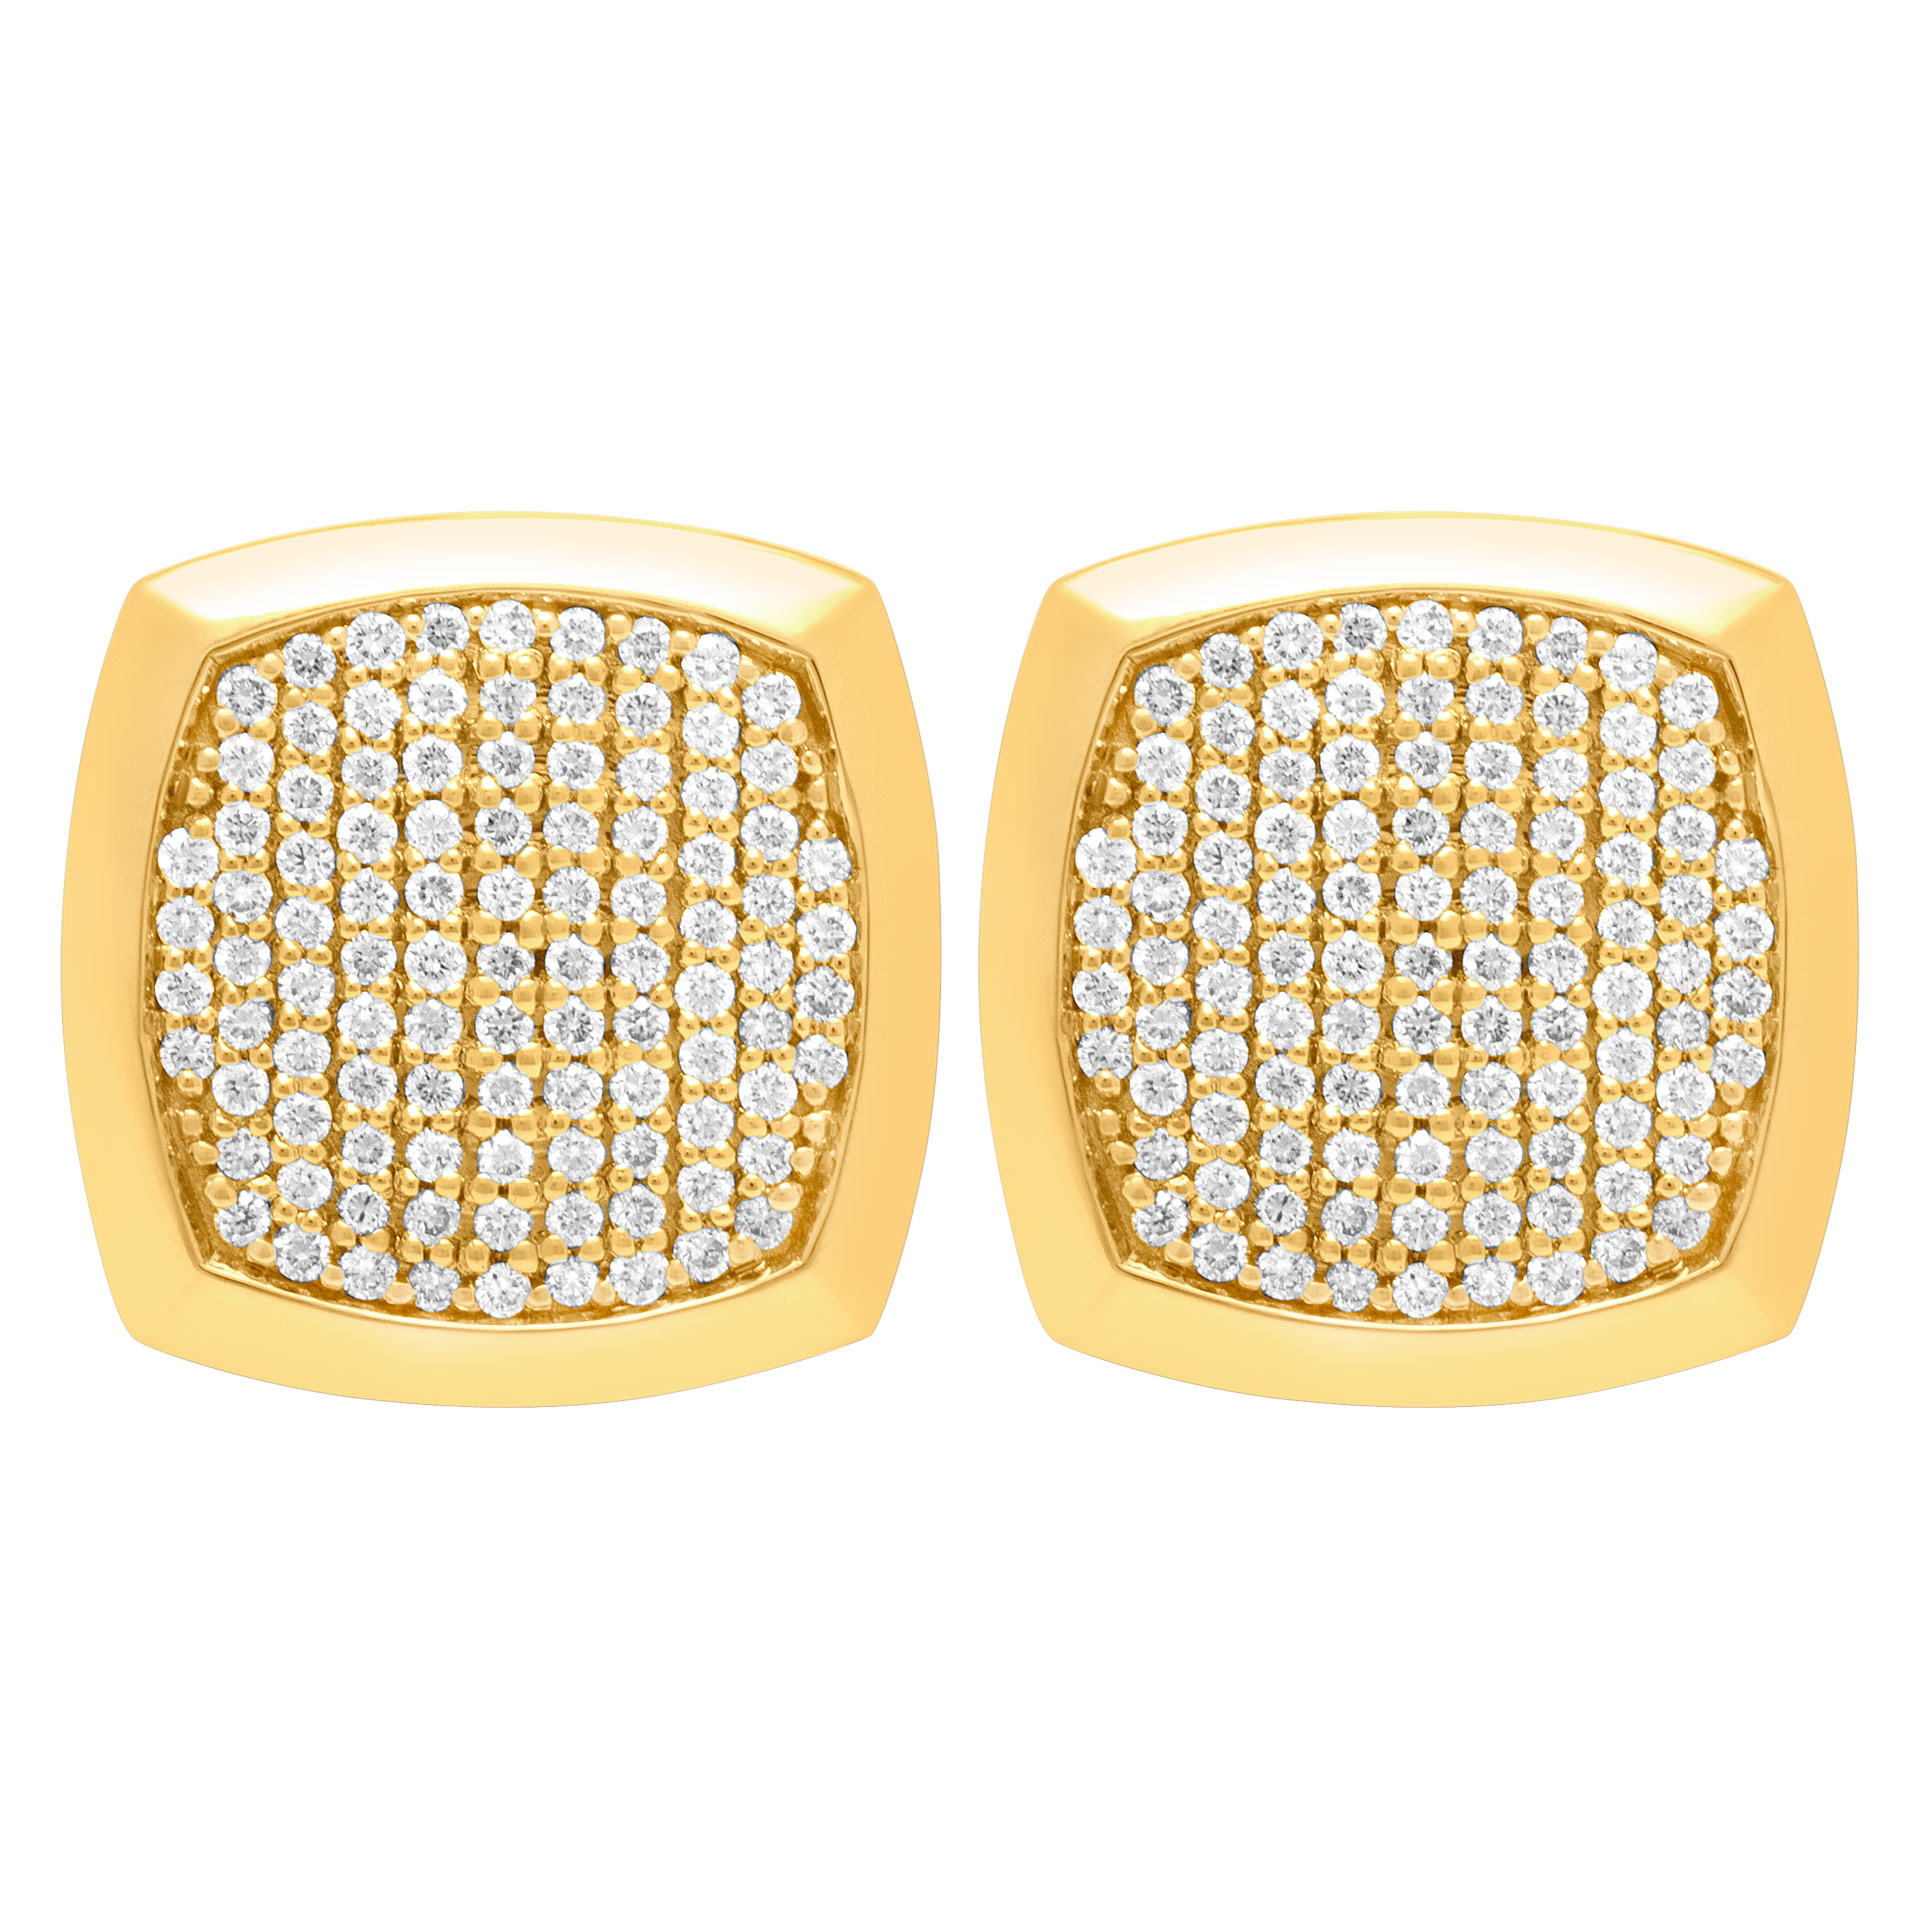 Cushion shape diamond cufflinks in 18k gold. 1.48 carats in diamonds